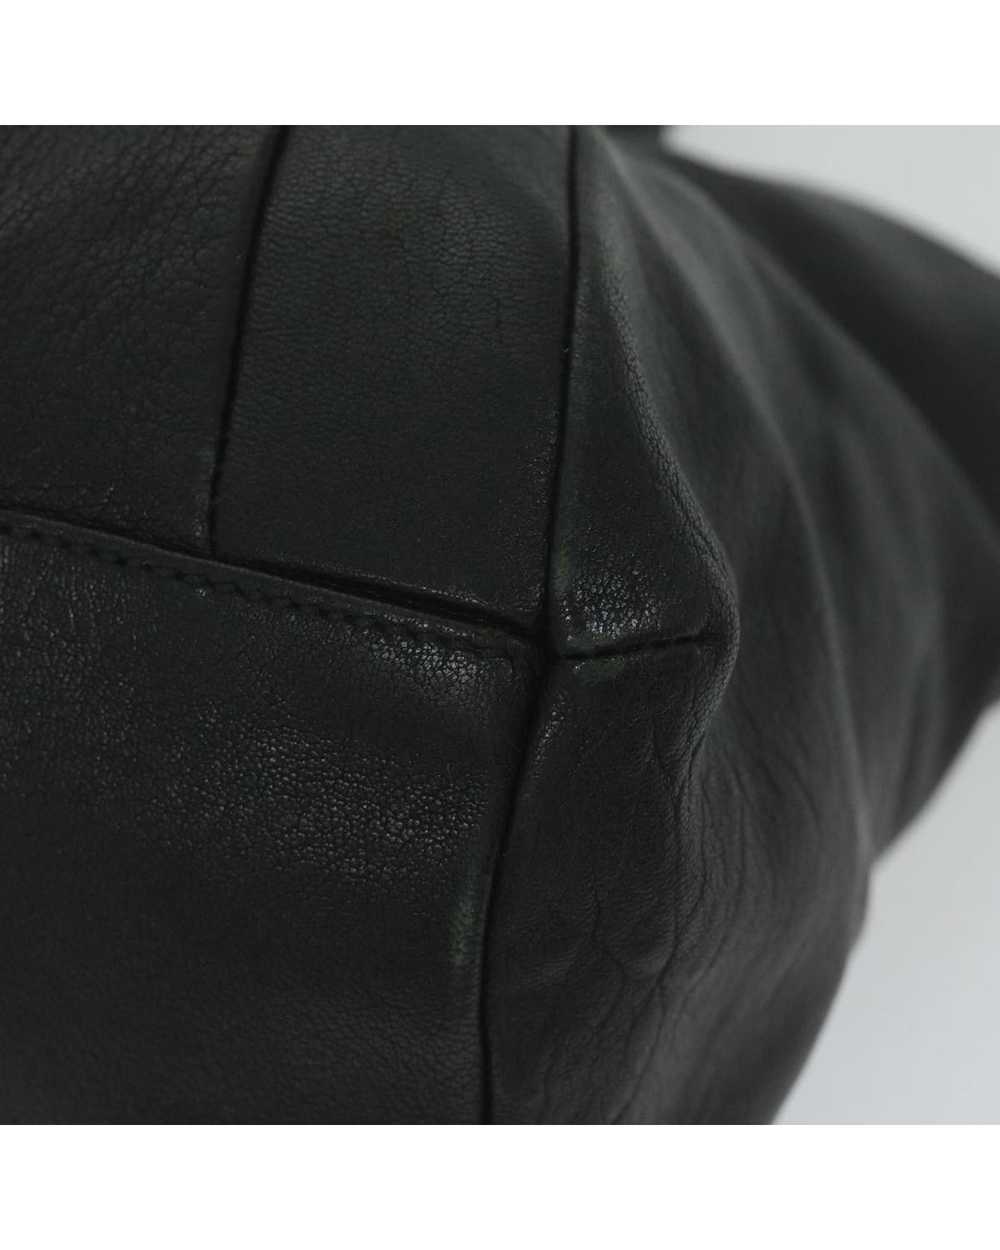 Salvatore Ferragamo Black Leather Tote Bag by Ita… - image 10